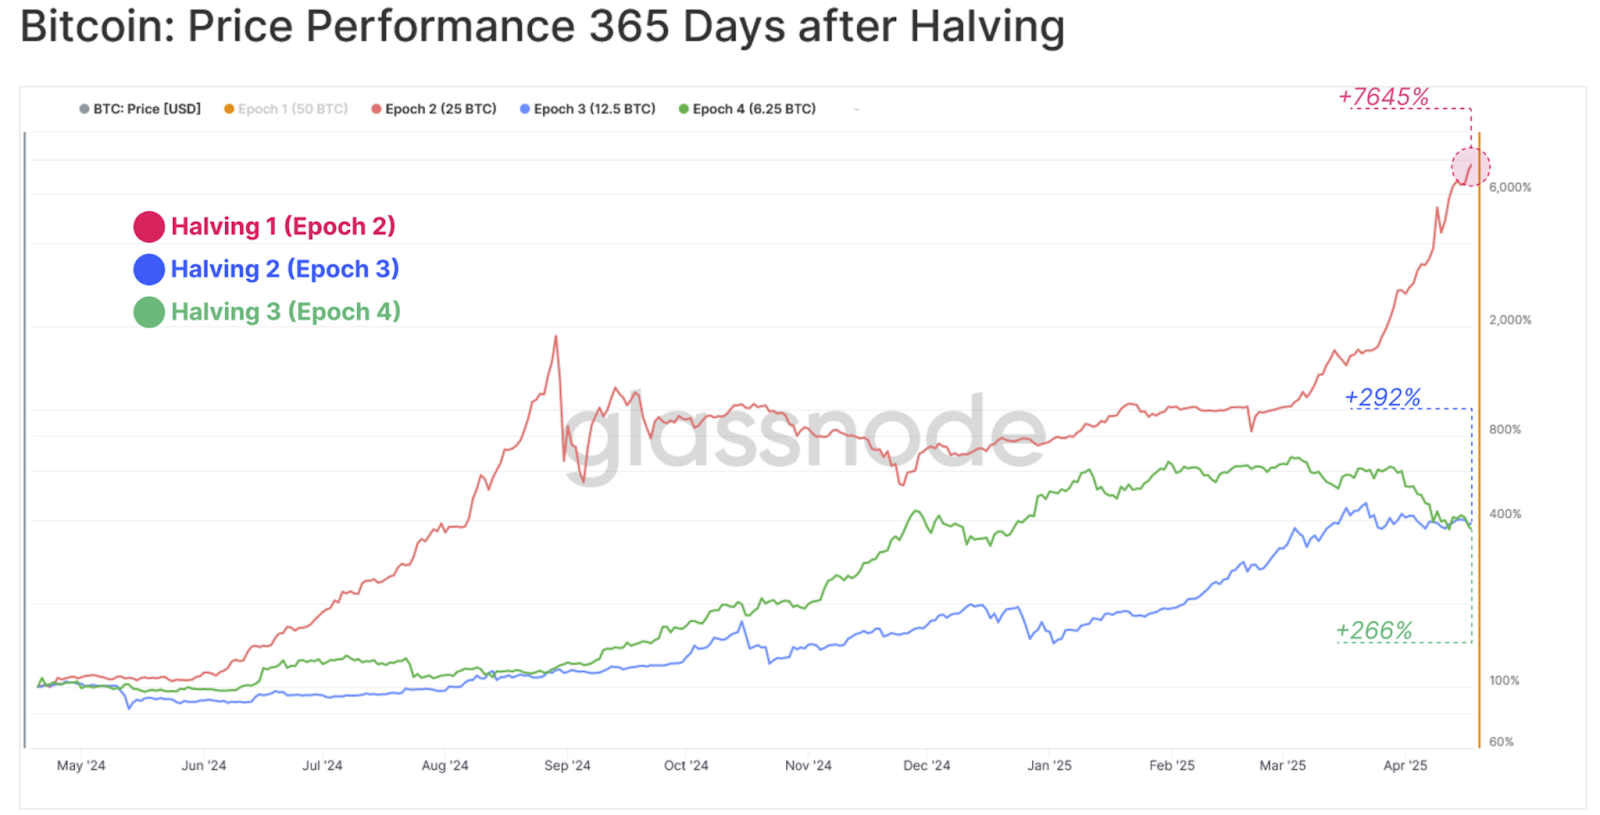 Gráfico que muestra el análisis de glassnode de que gran parte de las ganancias tras las reducciones a la mitad de Bitcoin se han producido históricamente en los 365 días siguientes a una reducción a la mitad.